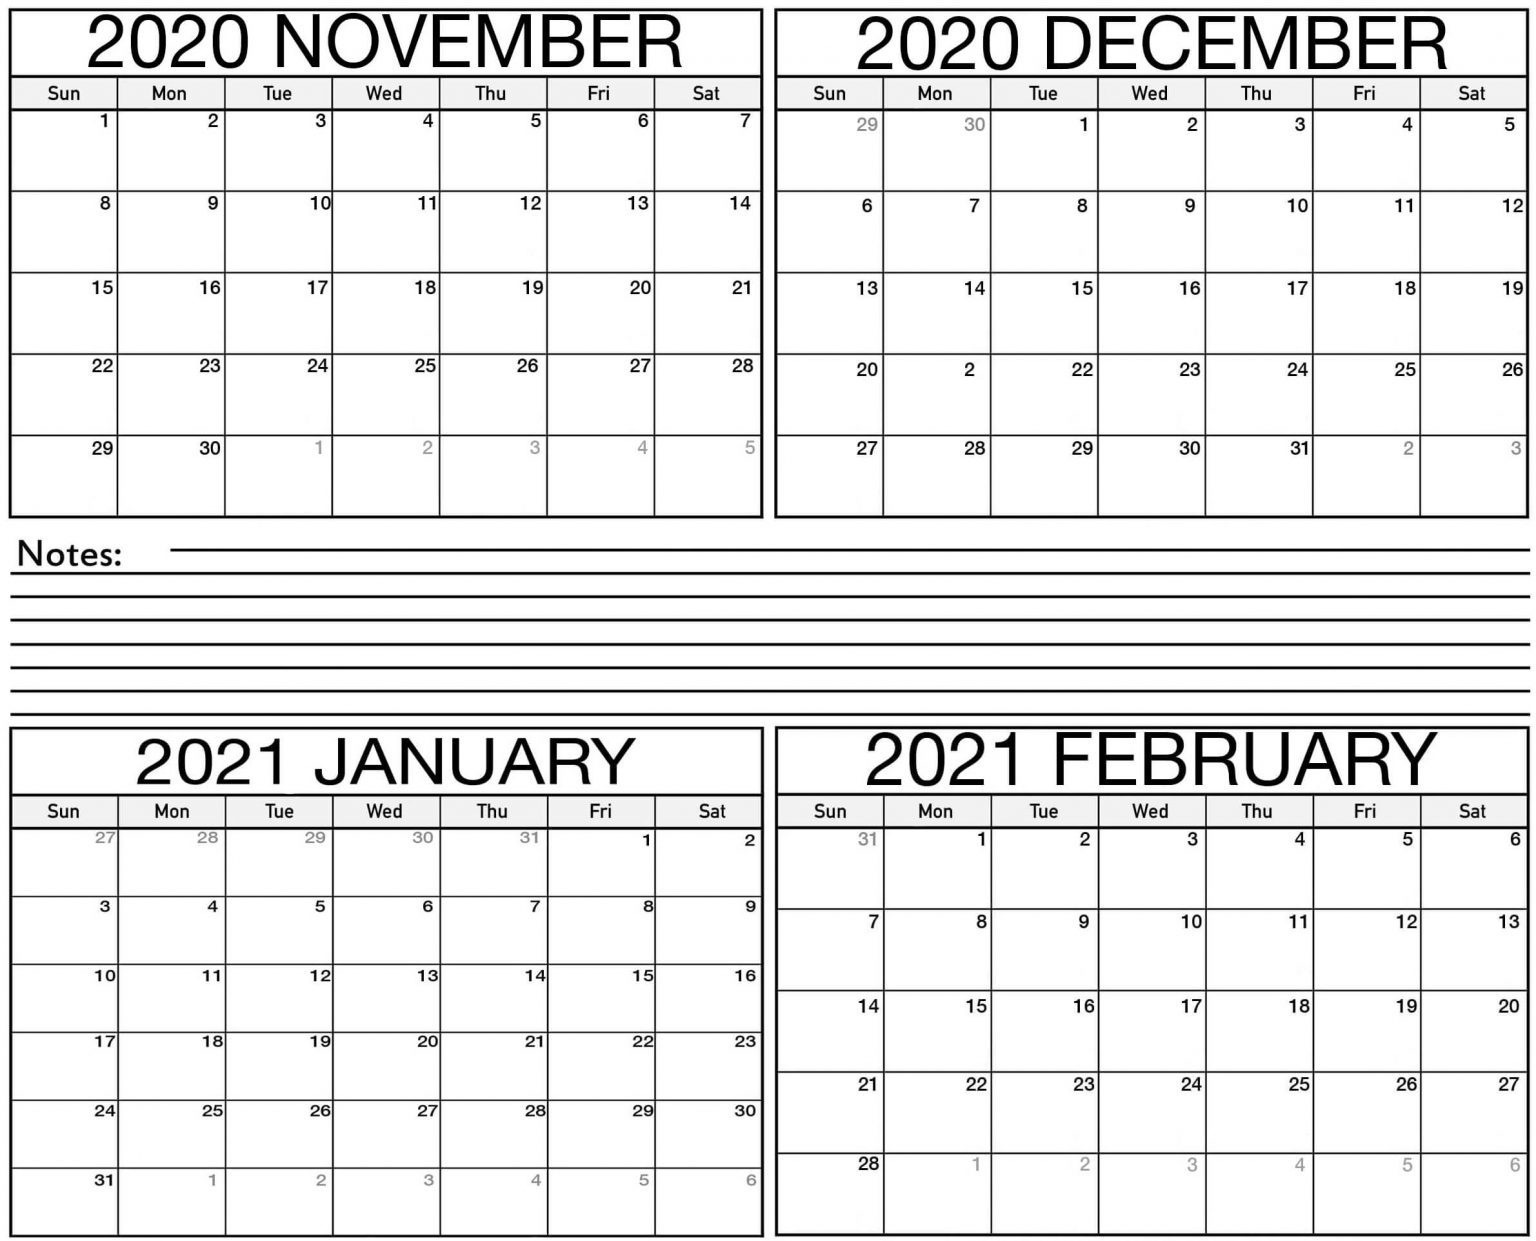 Cute November 2020 To February 2021 Calendar Excel With Notes - One Platform For Digital November 2020 - February 2021 Calendar